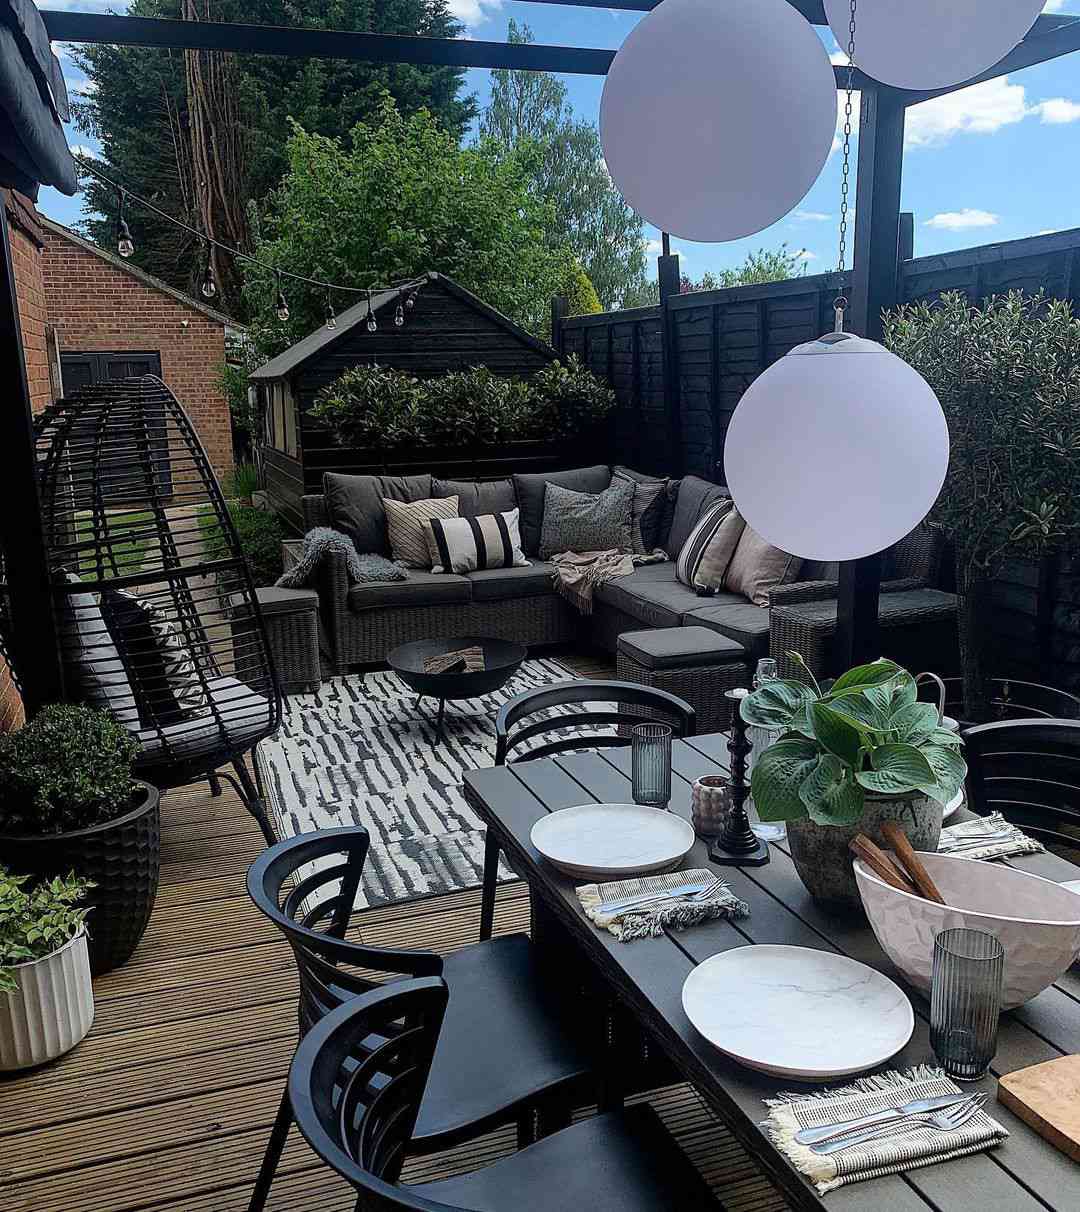 Uma área de estar e uma mesa de jantar em um jardim de canto